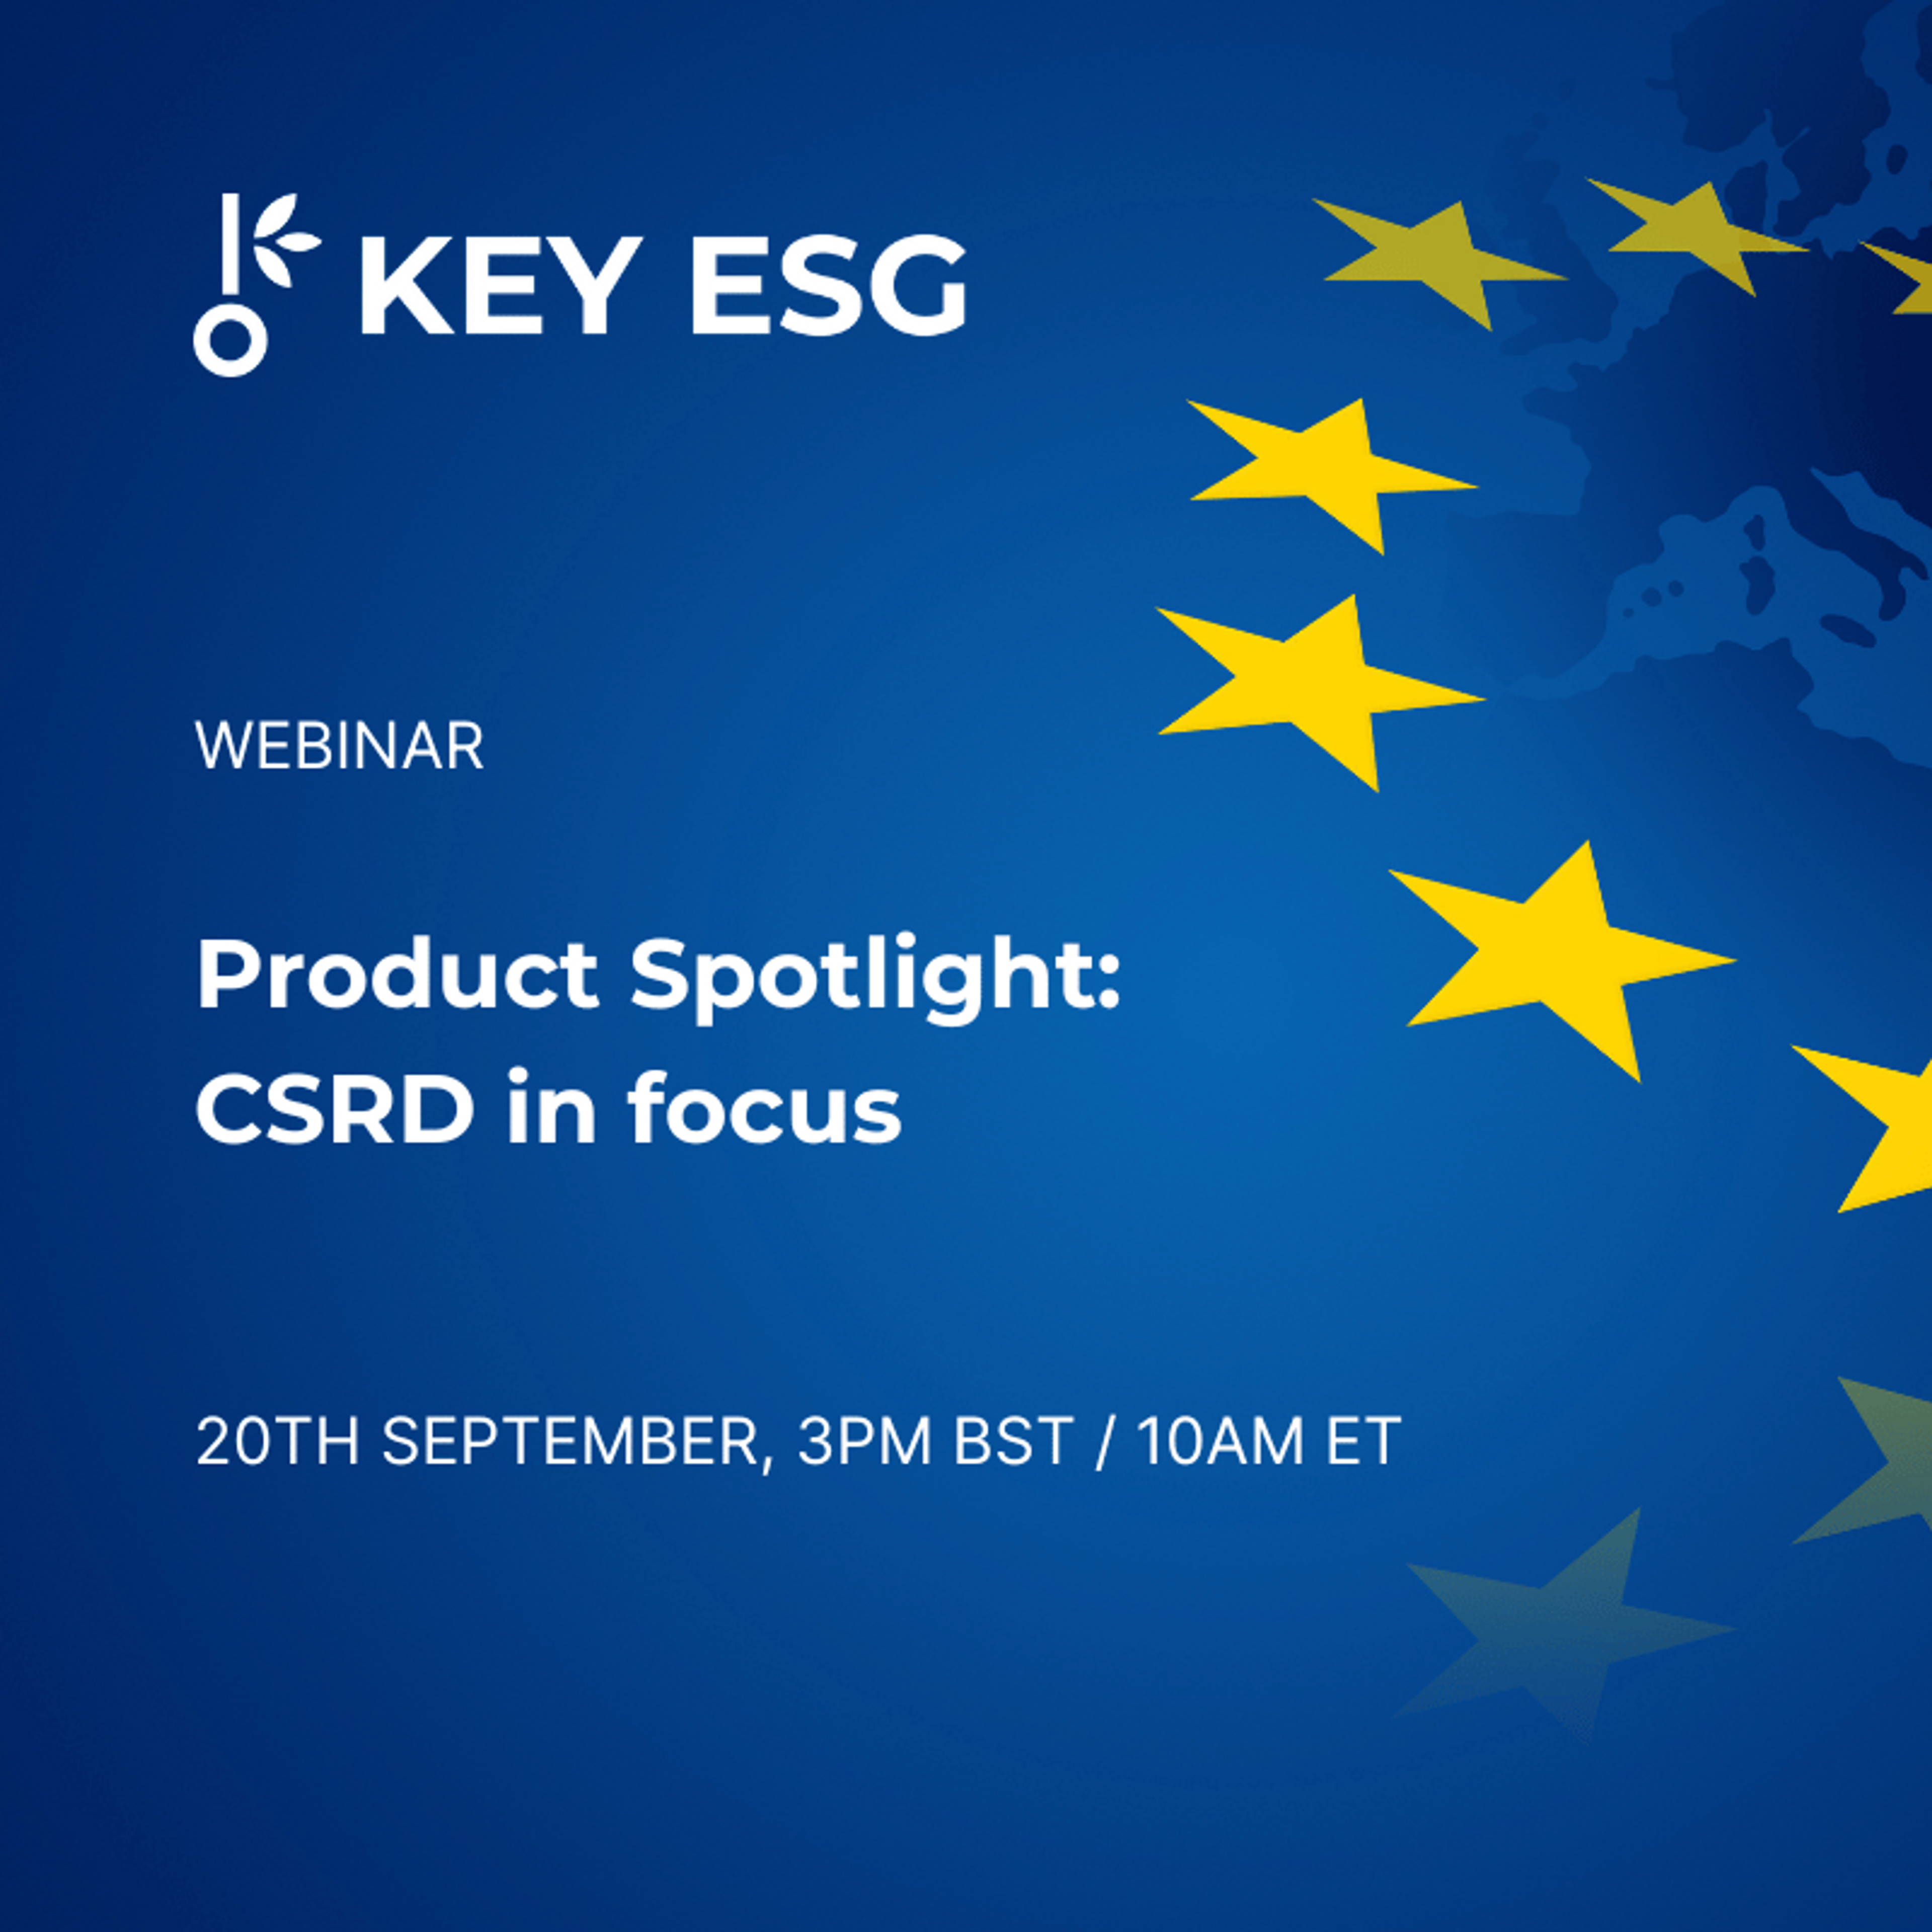 KEY ESG Product Spotlight webinar